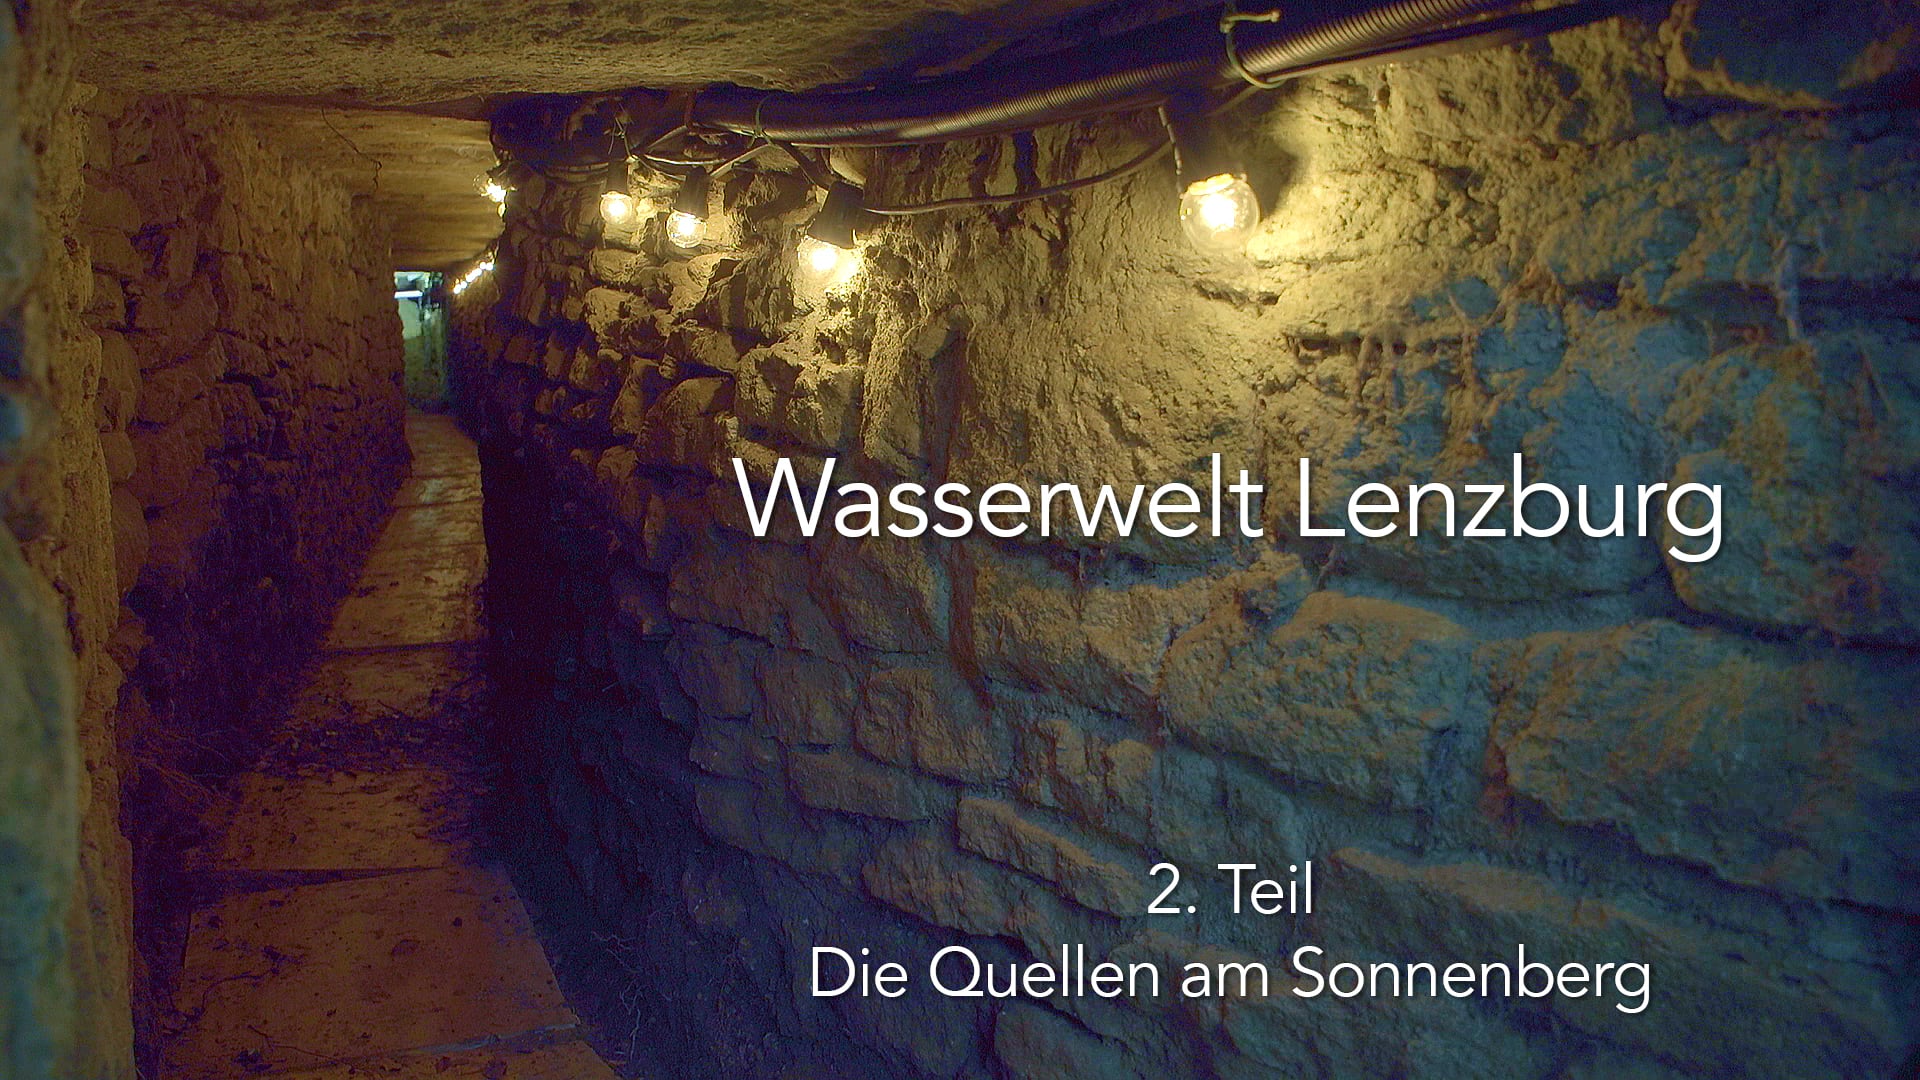 Wasserwelt Lenzburg | 2. Teil: "Die Quellen am Sonnenberg"